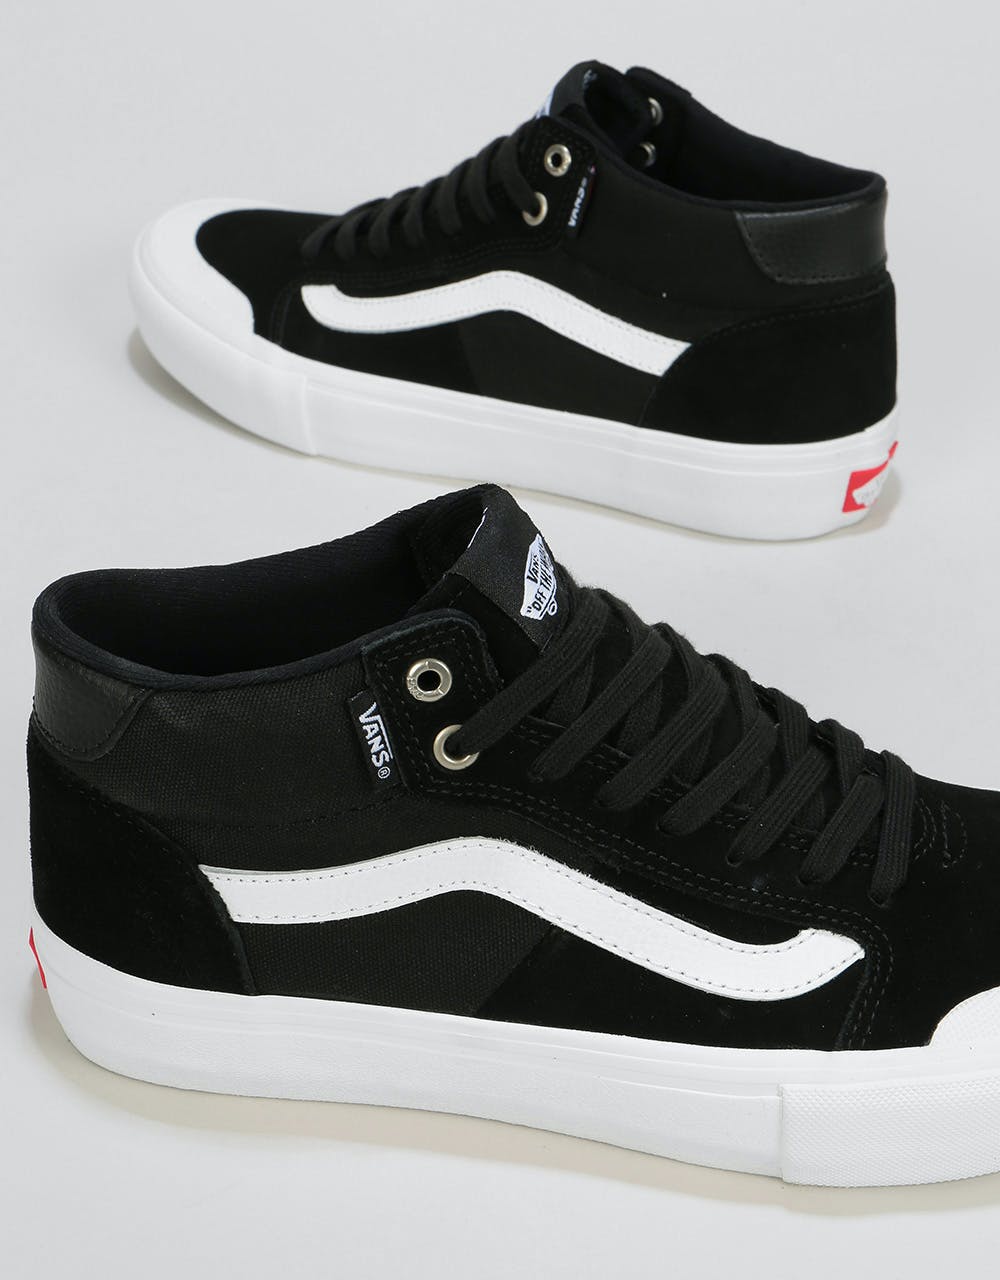 Vans Style 112 Mid Skate Shoes - Black/White